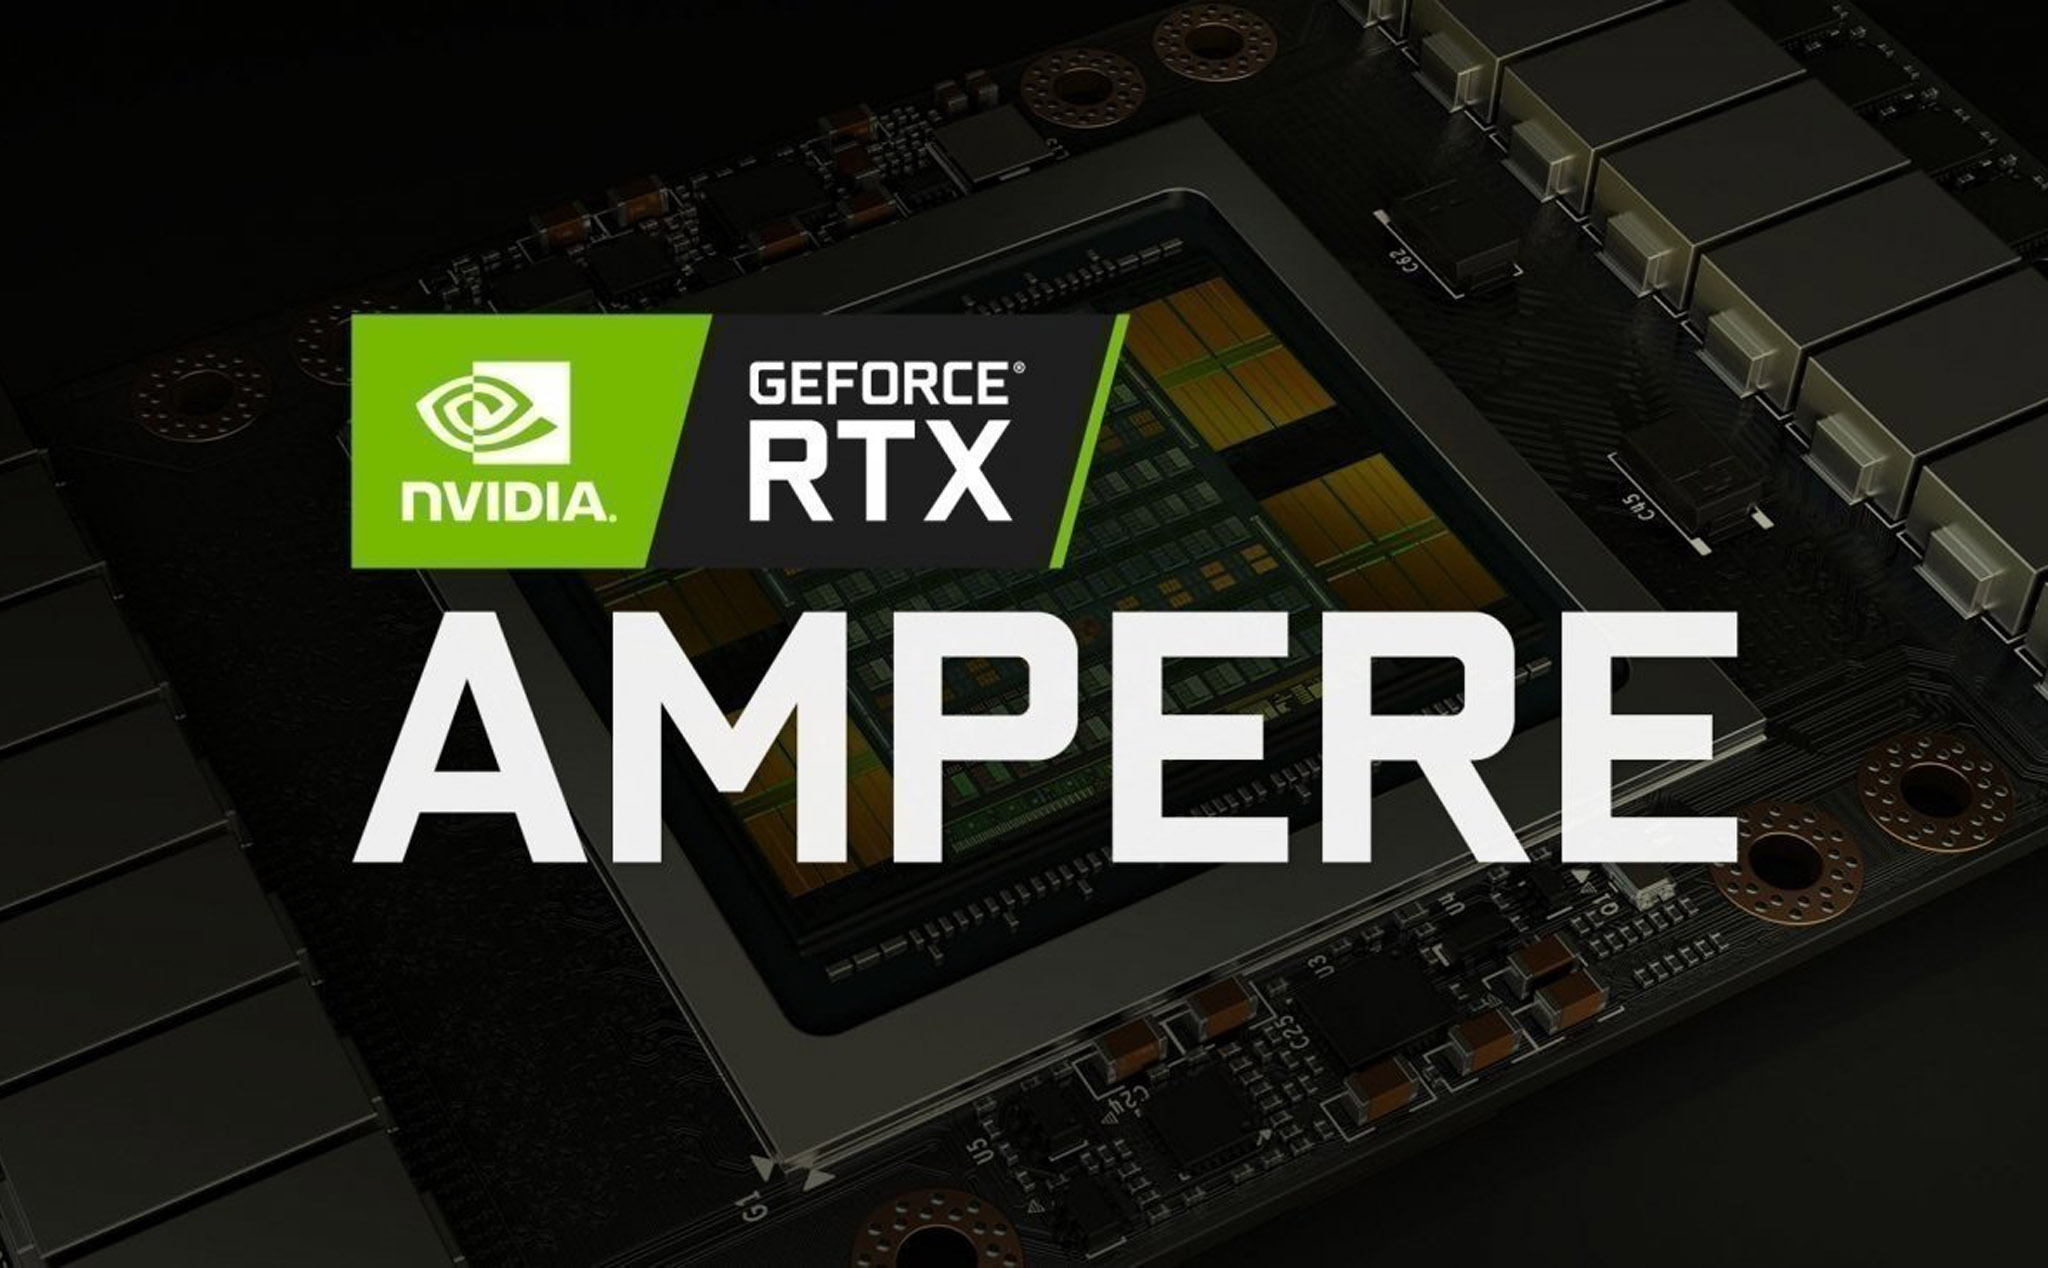 Nvidia tổ chức sự kiện ngày 14/5 với thông điệp “Get Amped”: RTX Ampere chuẩn bị ra mắt?